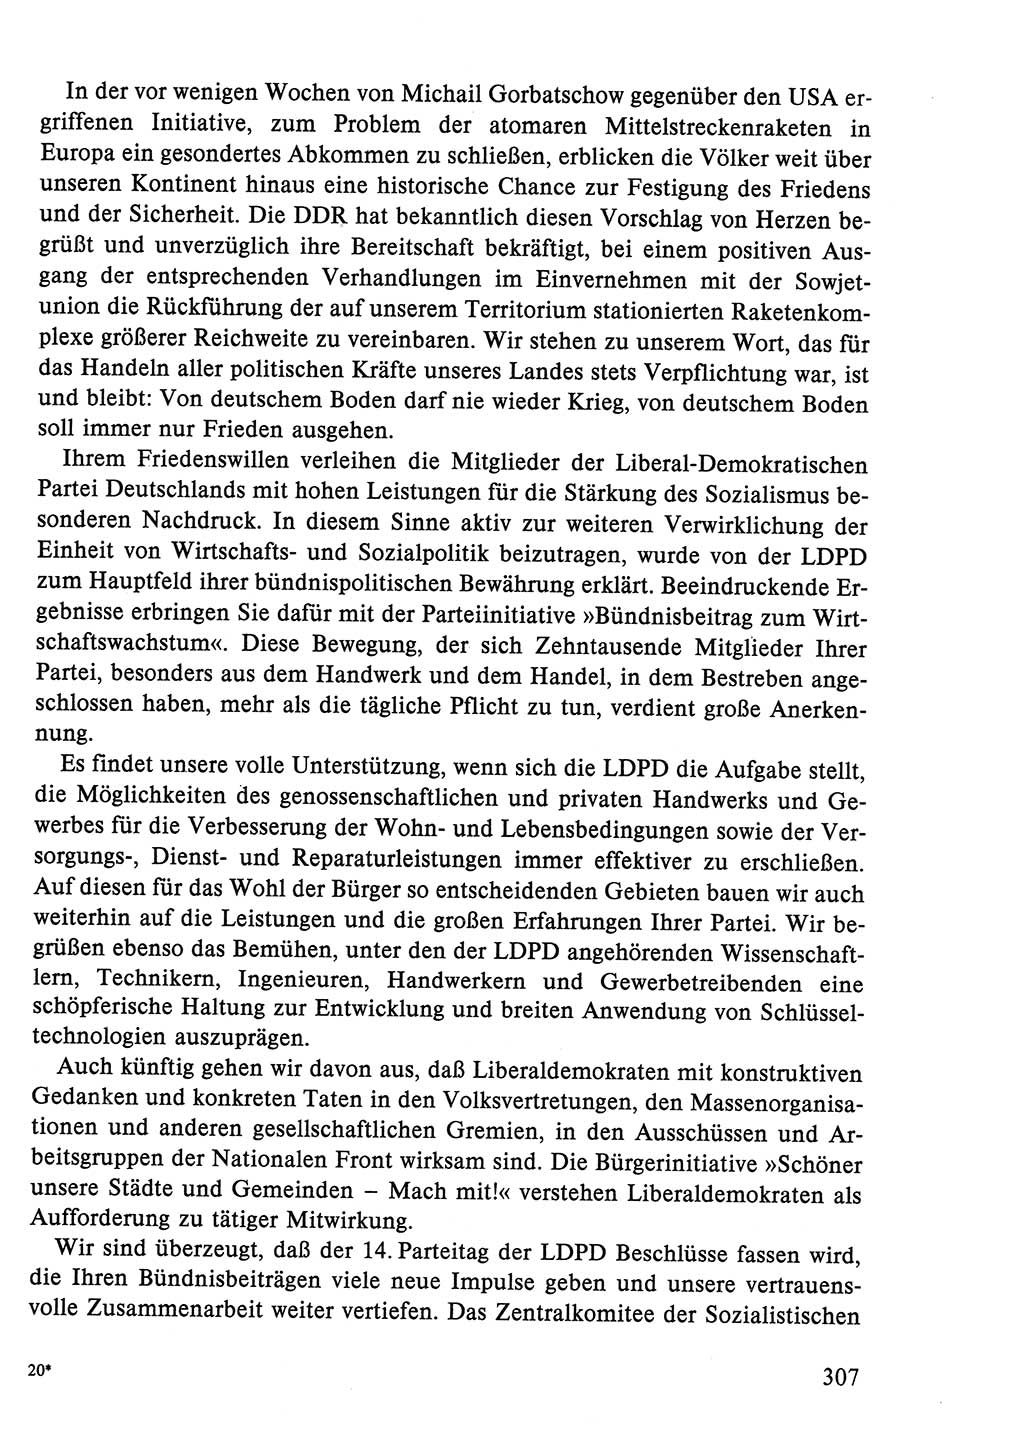 Dokumente der Sozialistischen Einheitspartei Deutschlands (SED) [Deutsche Demokratische Republik (DDR)] 1986-1987, Seite 307 (Dok. SED DDR 1986-1987, S. 307)